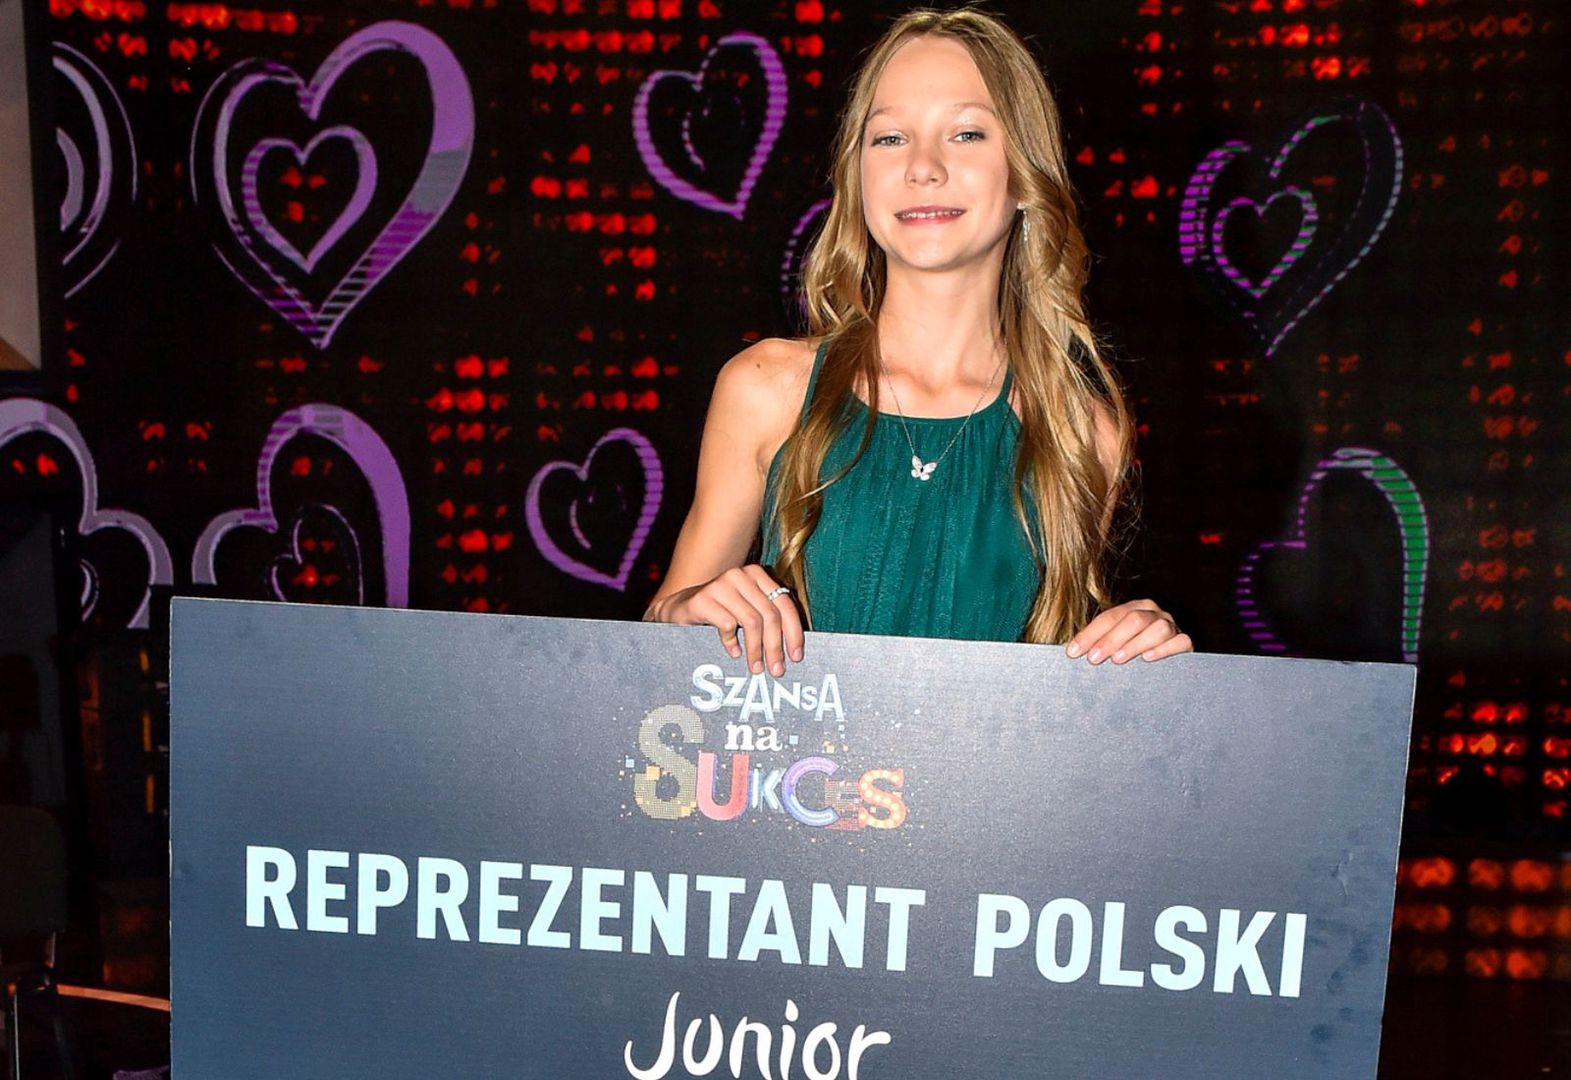 Maja Krzyżewska zaśpiewa "I Just Need A Friend" na Eurowizji Junior. To hit na miarę zwycięstwa?